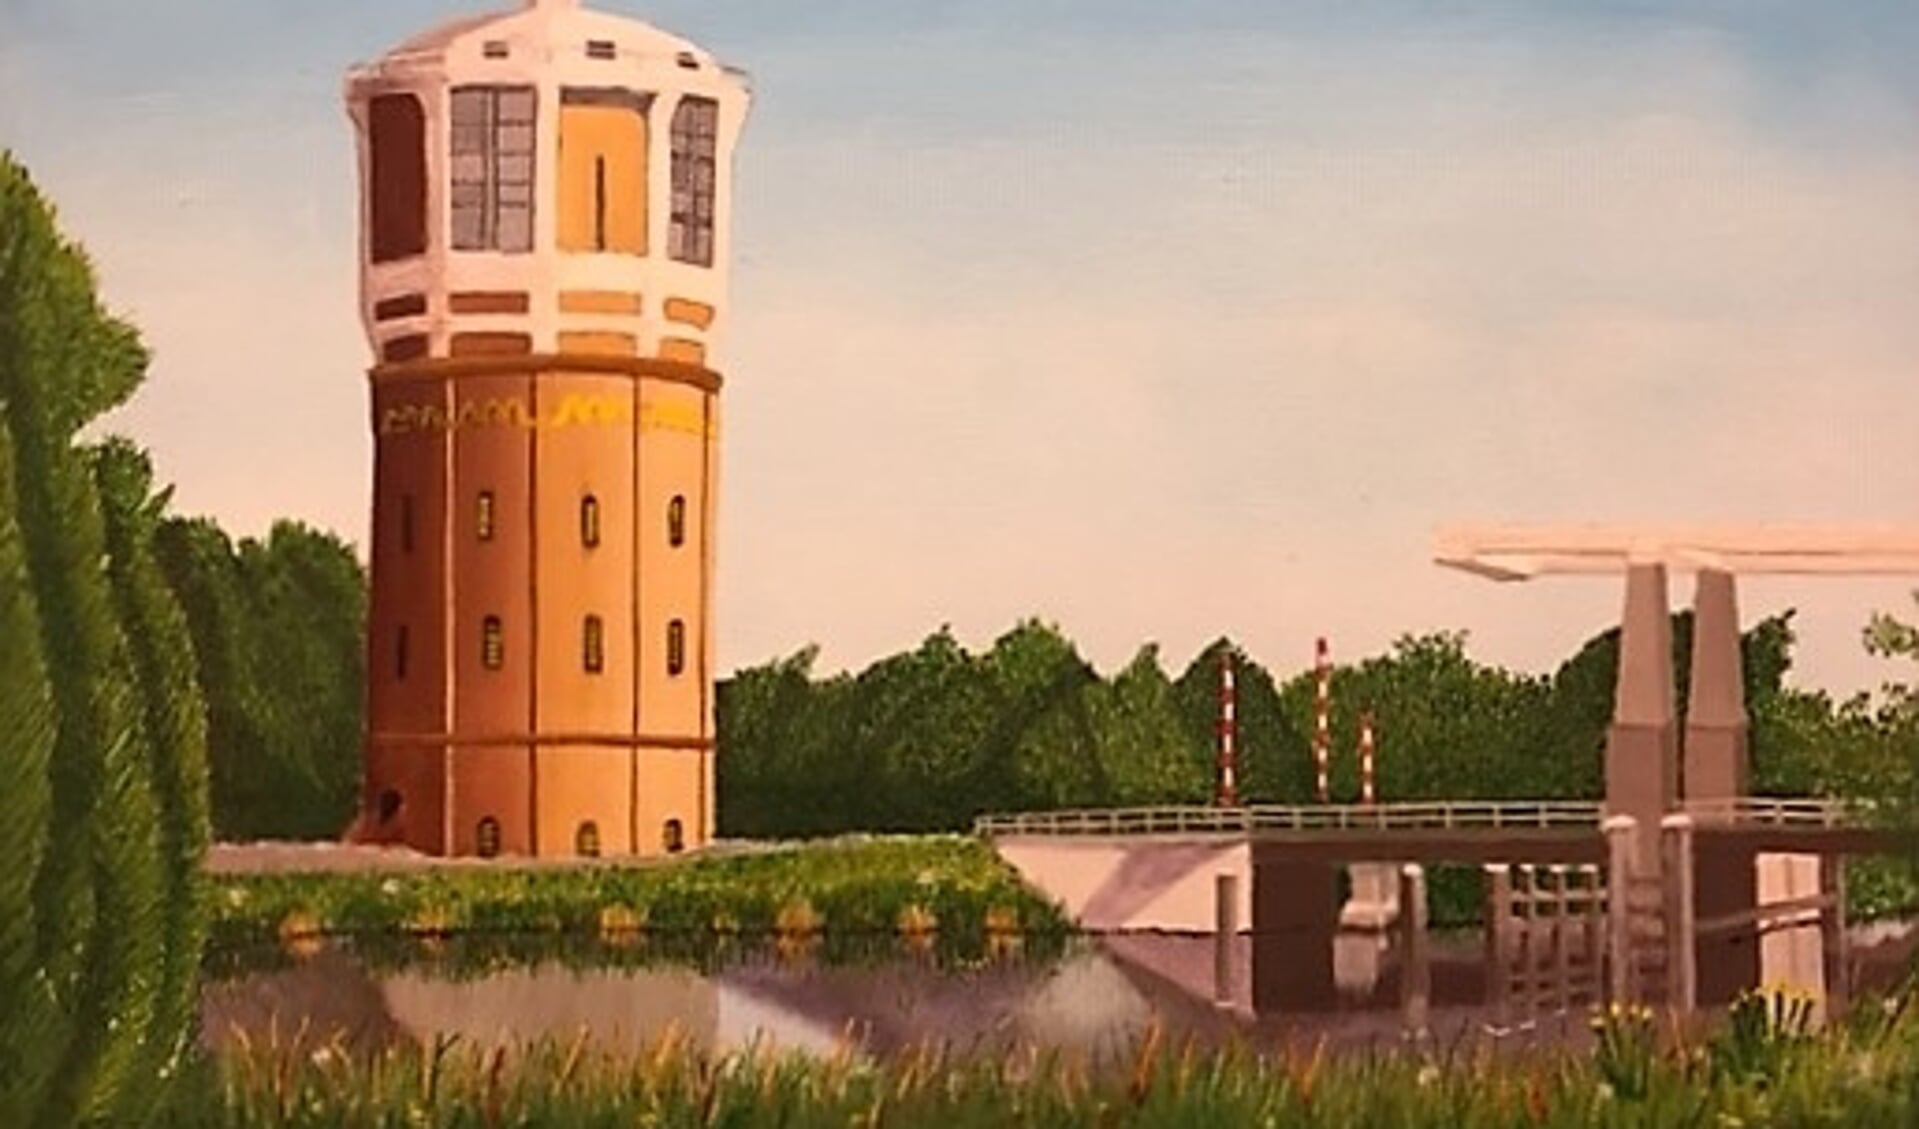 De watertoren te Westzaan van Henk Deyle.